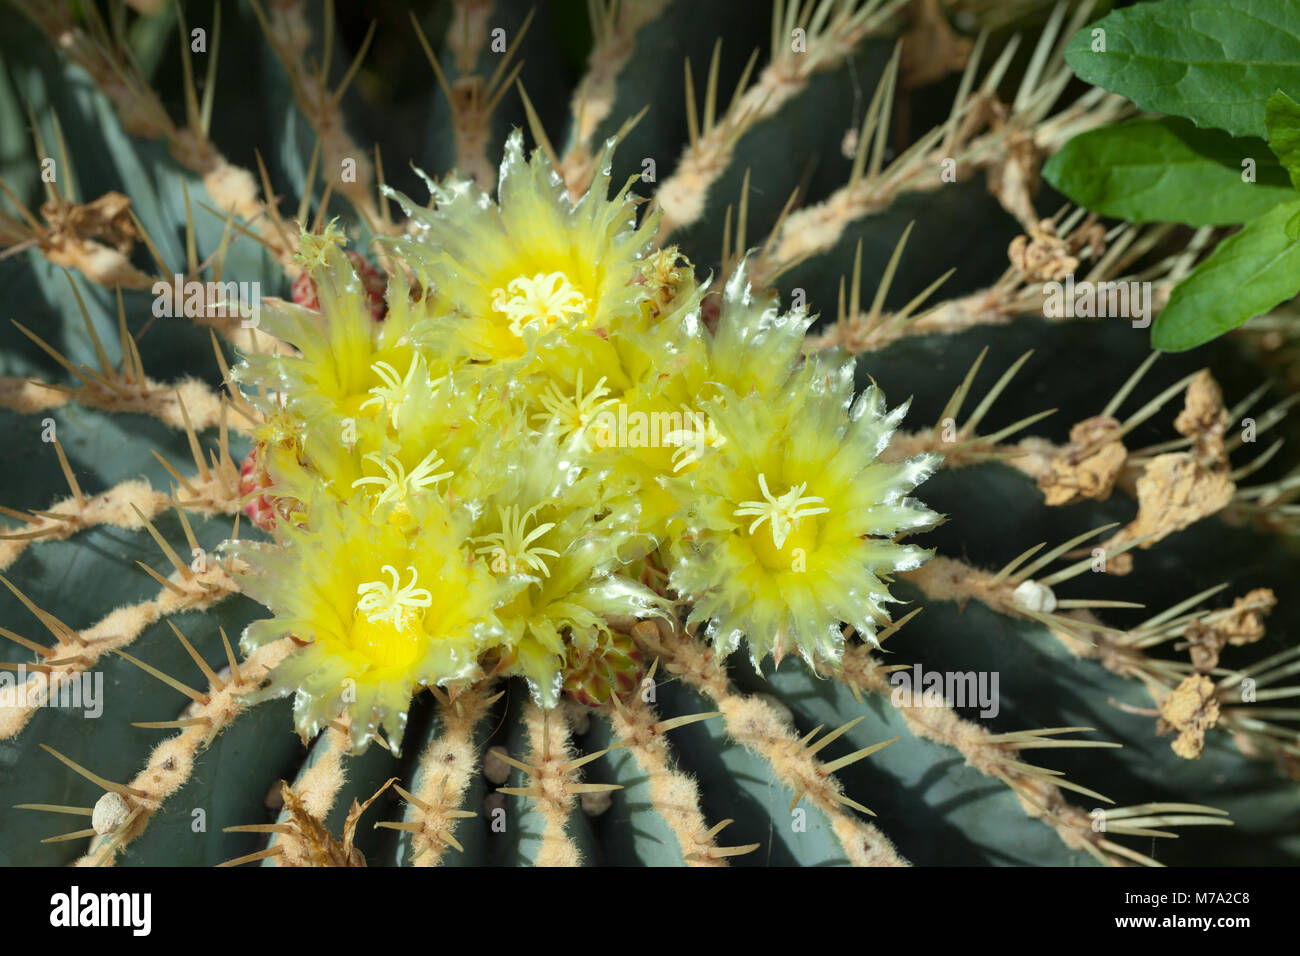 Glaucas barril cactus, Blågrön djävulstunga (Ferocactus glaucescens) Foto de stock